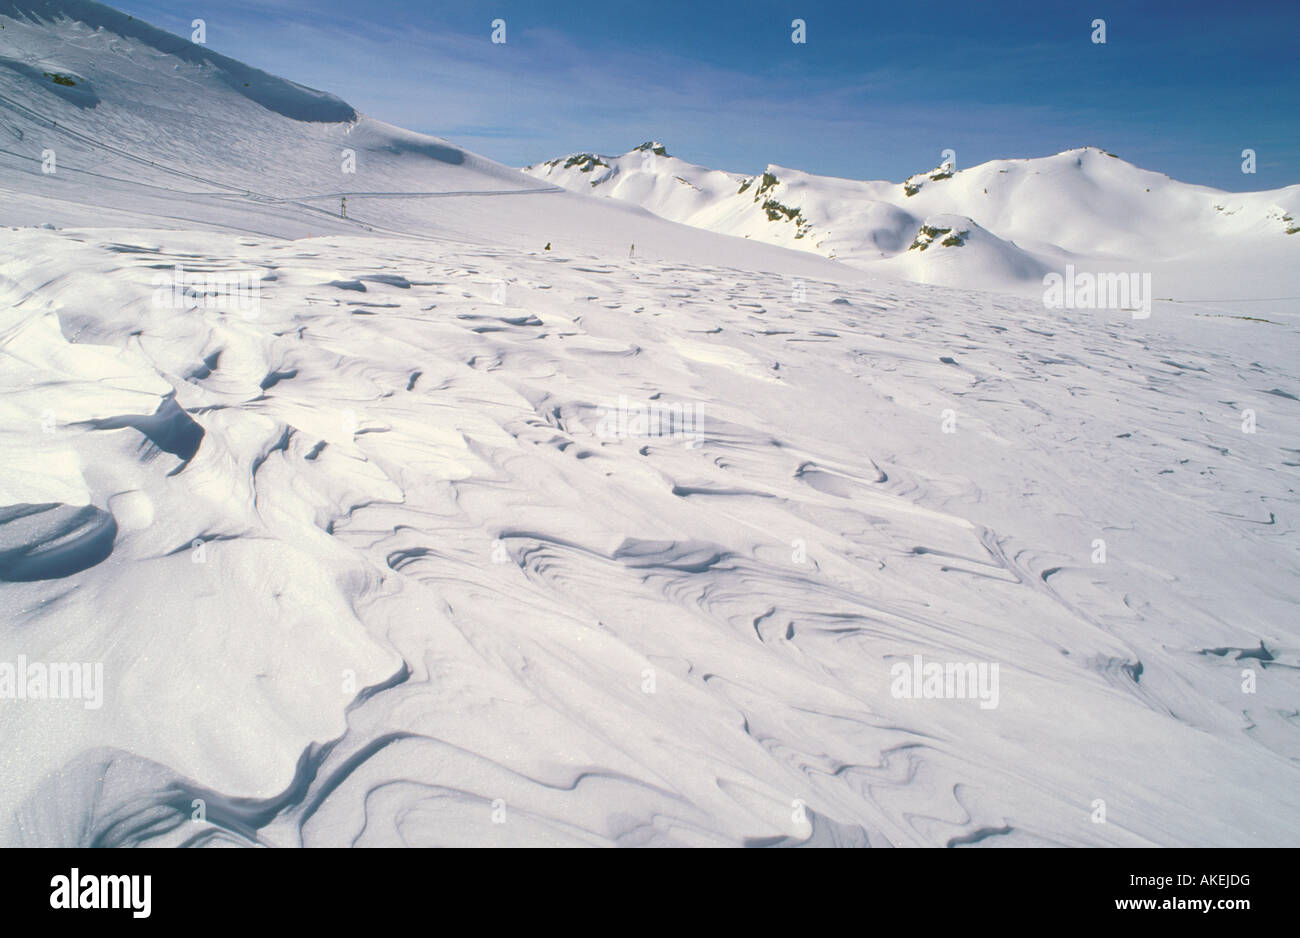 Glacier de plaine morte, Crans montana, Suisse Photo Stock - Alamy